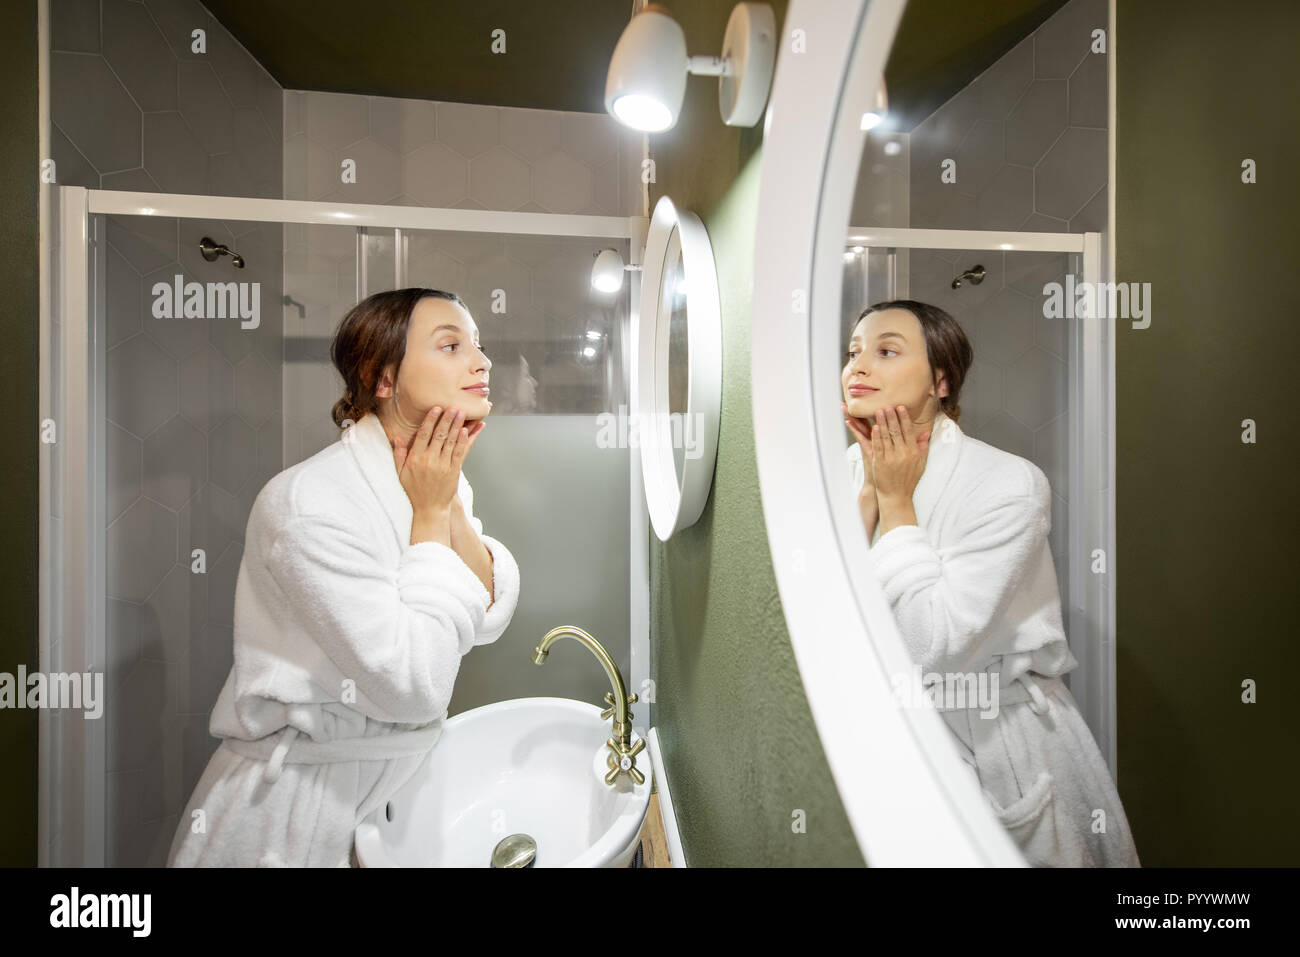 Femme en peignoir faire massage du visage à la ronde dans le miroir dans la salle de bains Banque D'Images